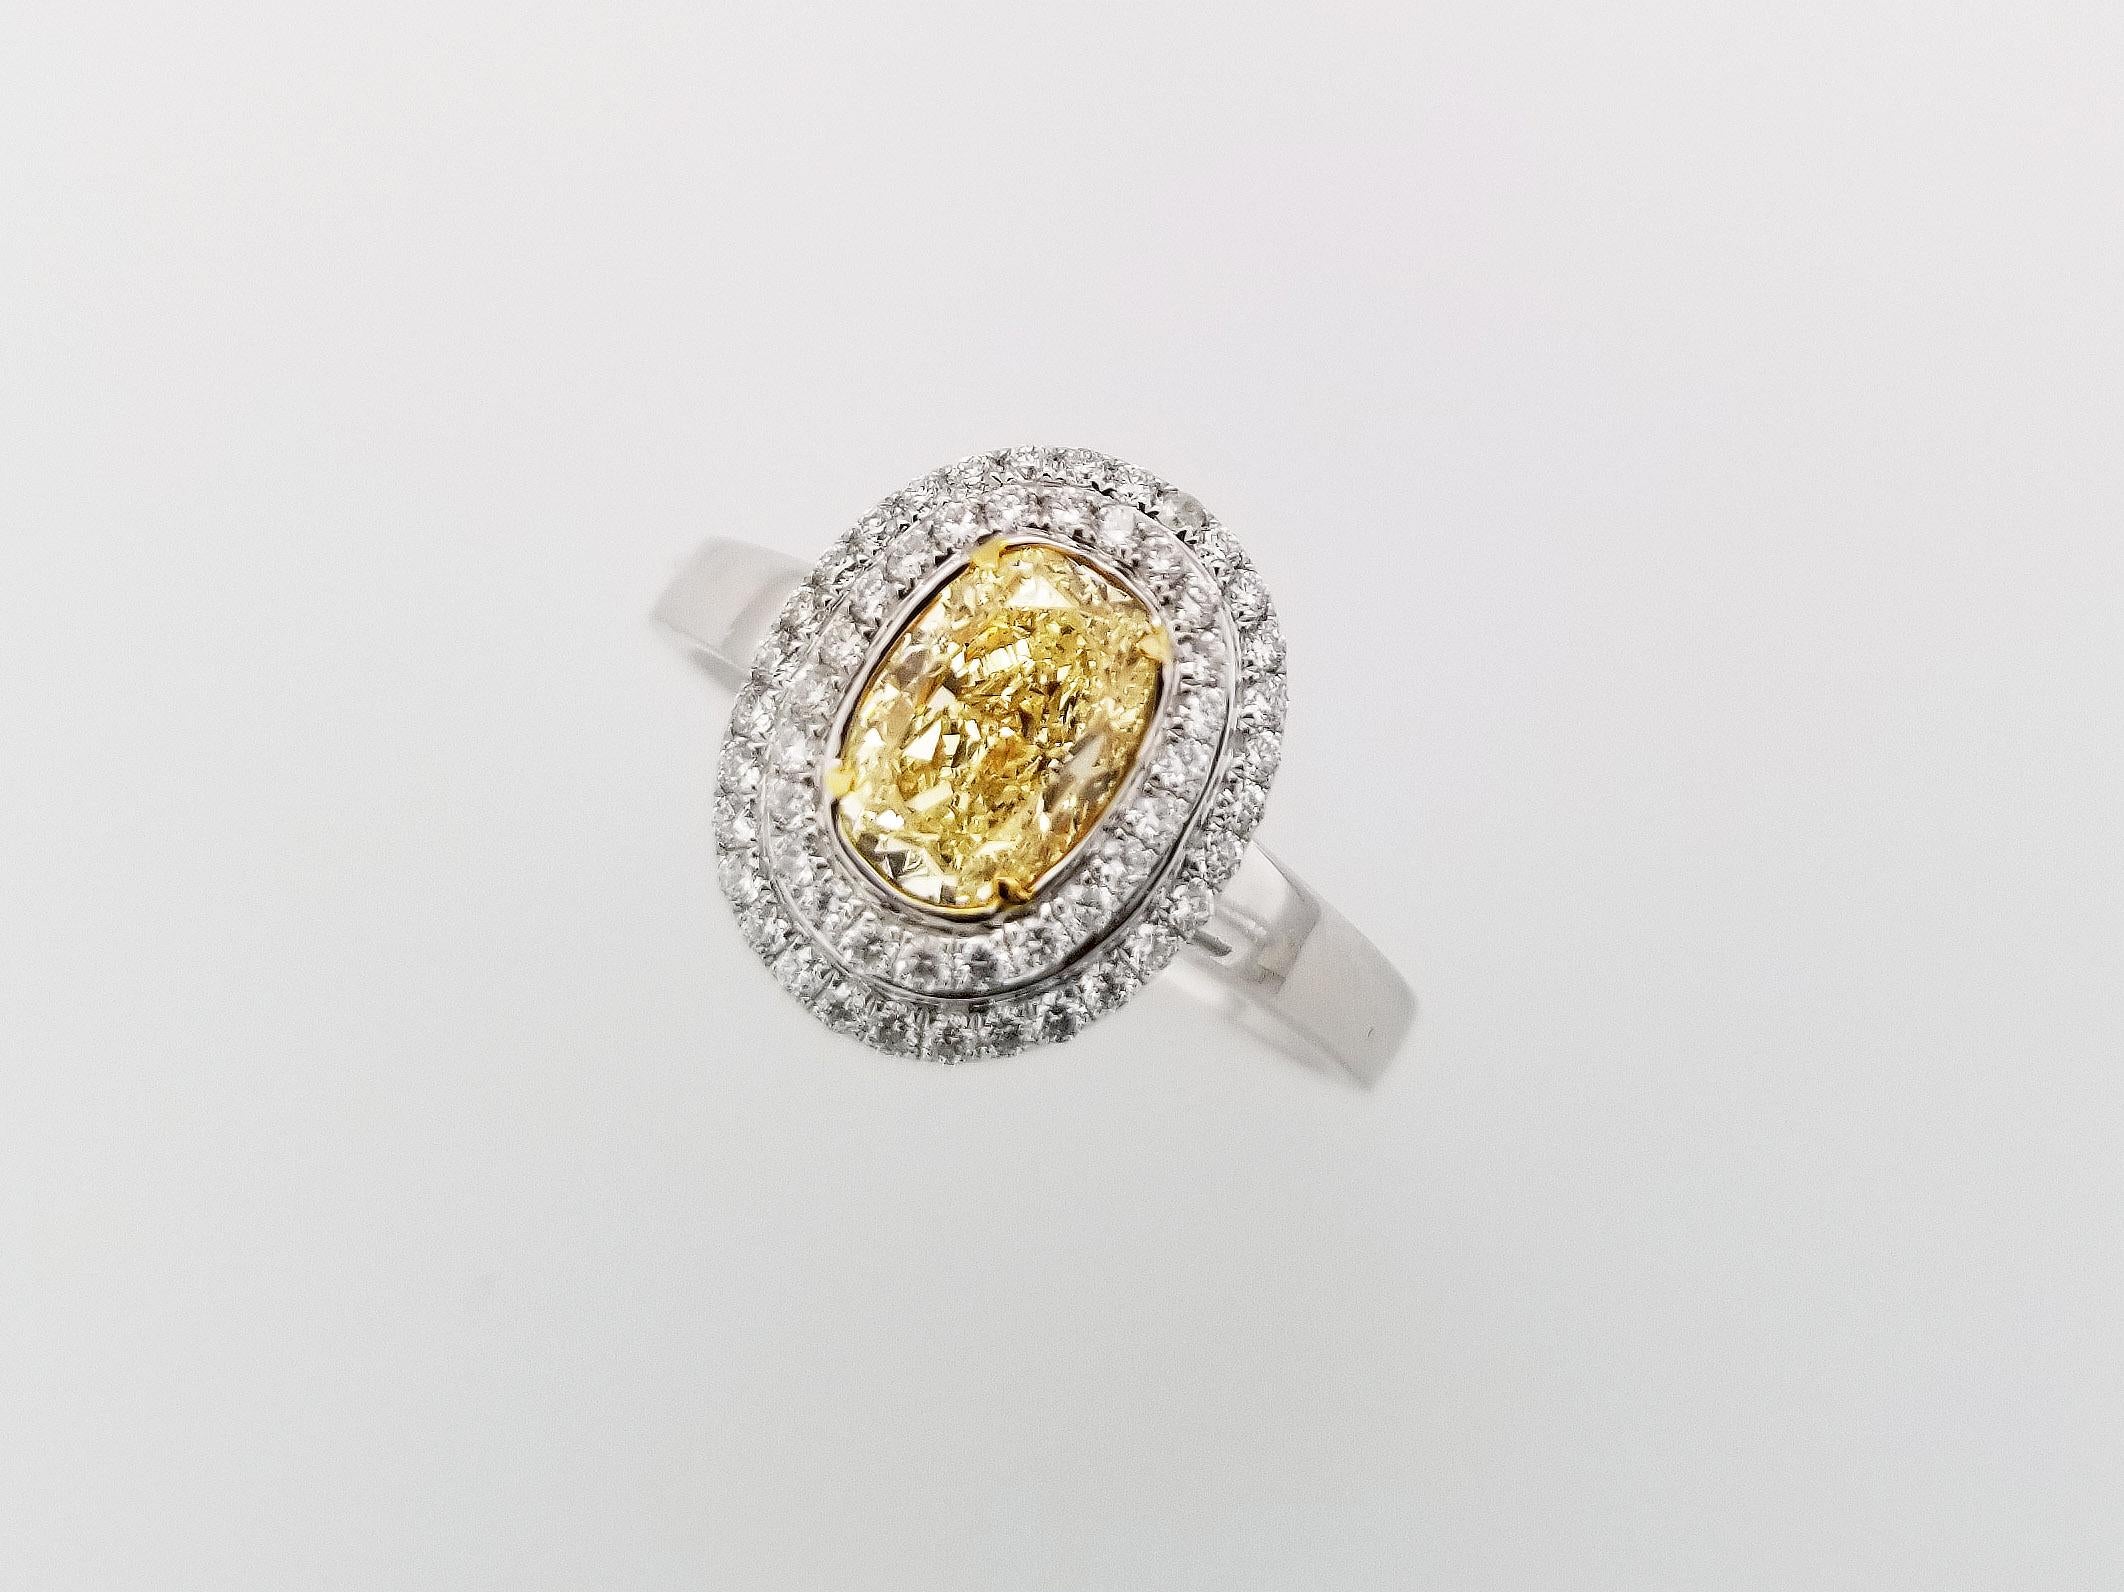 Geschenke zum Muttertag!

Halo-Ring mit 1,20 Karat Fancy Light Yellow Diamond Mittelstein, umgeben von zwei Reihen runder weißer Diamanten, TCW 0,29. Der Mittelstein hat eine Reinheit von SI1 und das 18k Weißgoldband kann auf Anfrage in der Größe